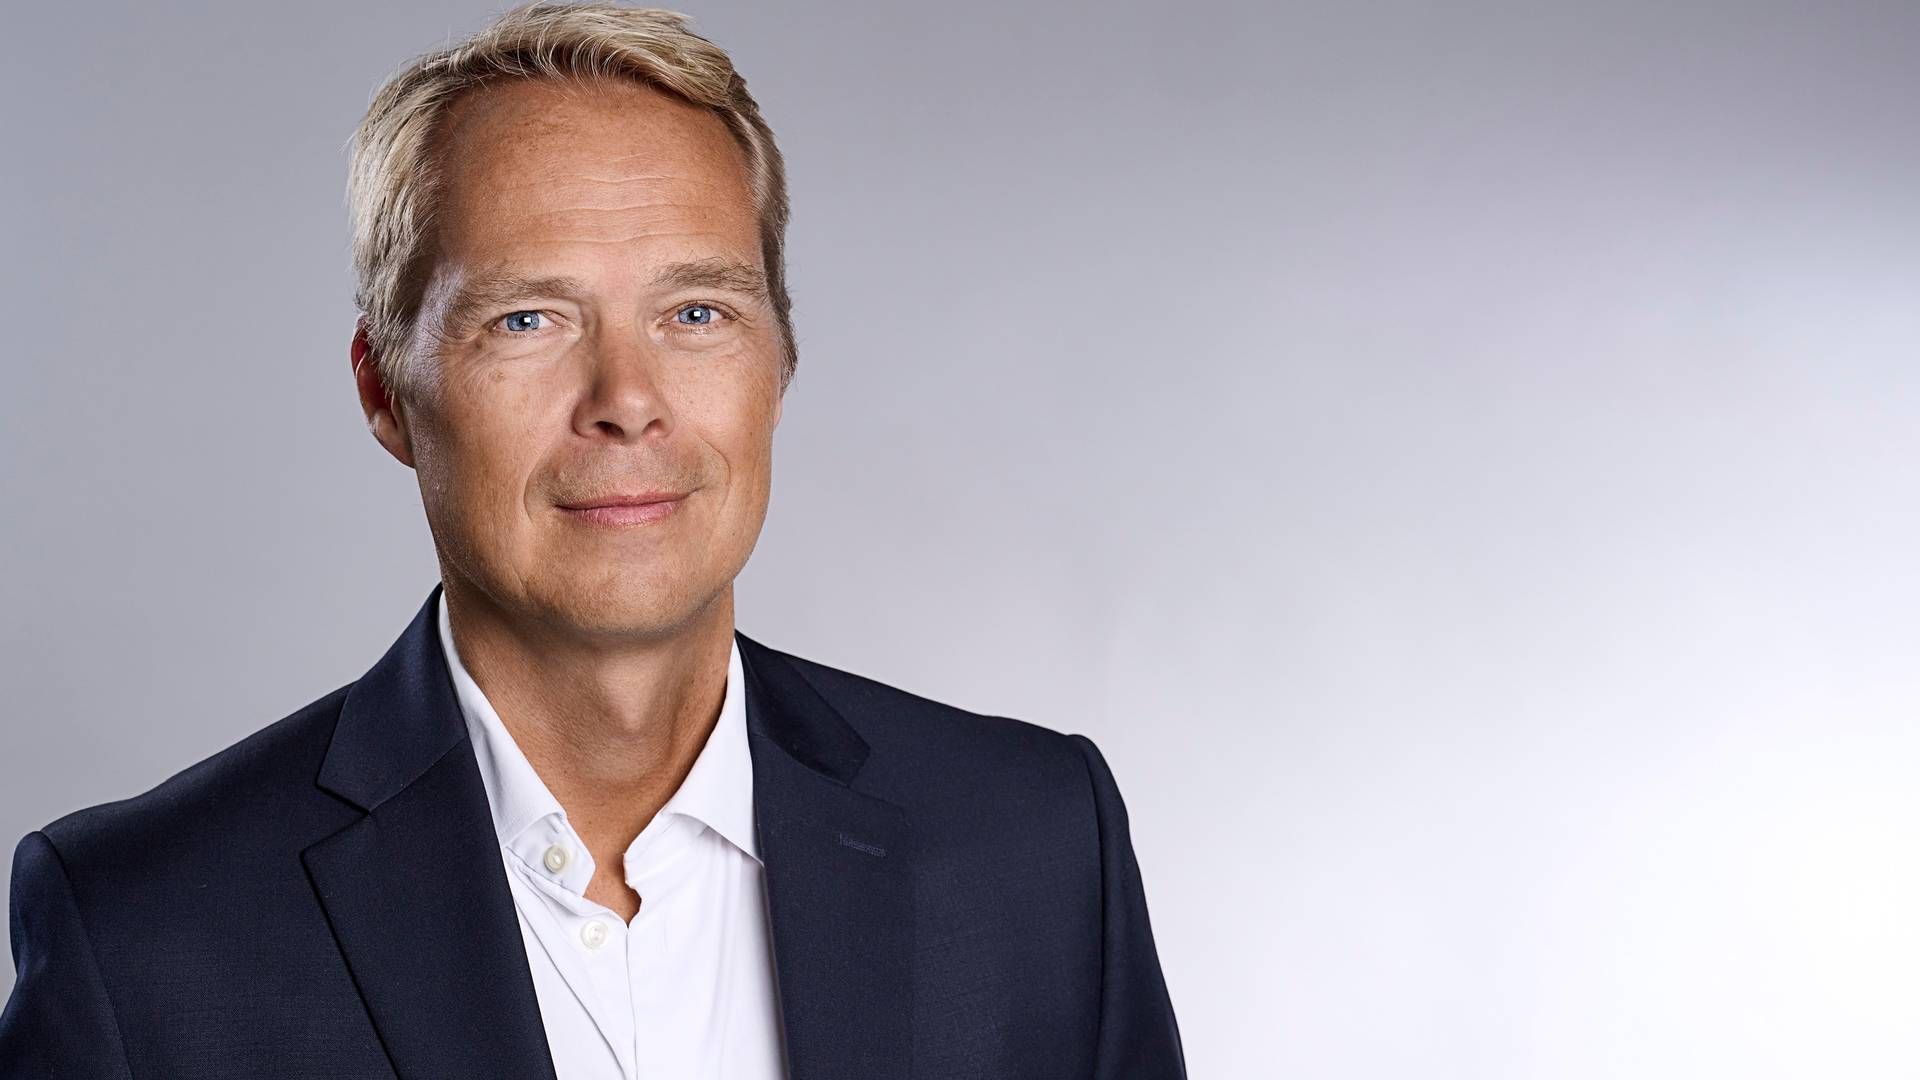 "De høje omkostninger og inflation har presset indtjeningen," konstaterer Nordsterns adm. direktør, Torben Modvig. | Foto: PR / Helle Moos